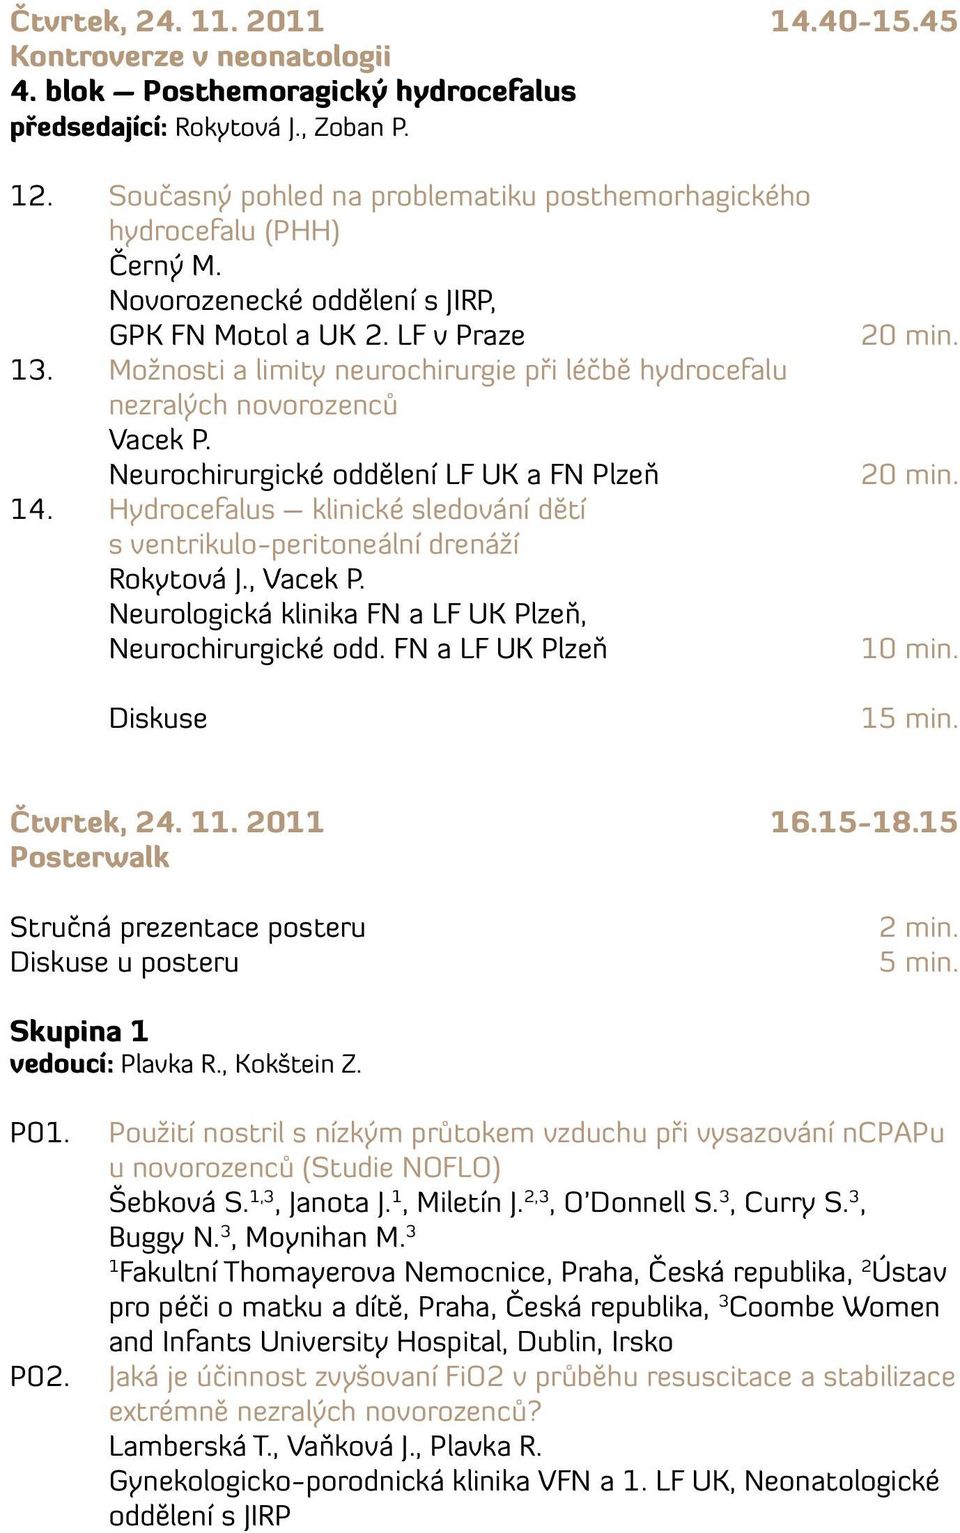 Hydrocefalus klinické sledování dětí s ventrikulo-peritoneální drenáží Rokytová J., Vacek P. Neurologická klinika FN a LF UK Plzeň, Neurochirurgické odd. FN a LF UK Plzeň Diskuse 0 min. 5 min.